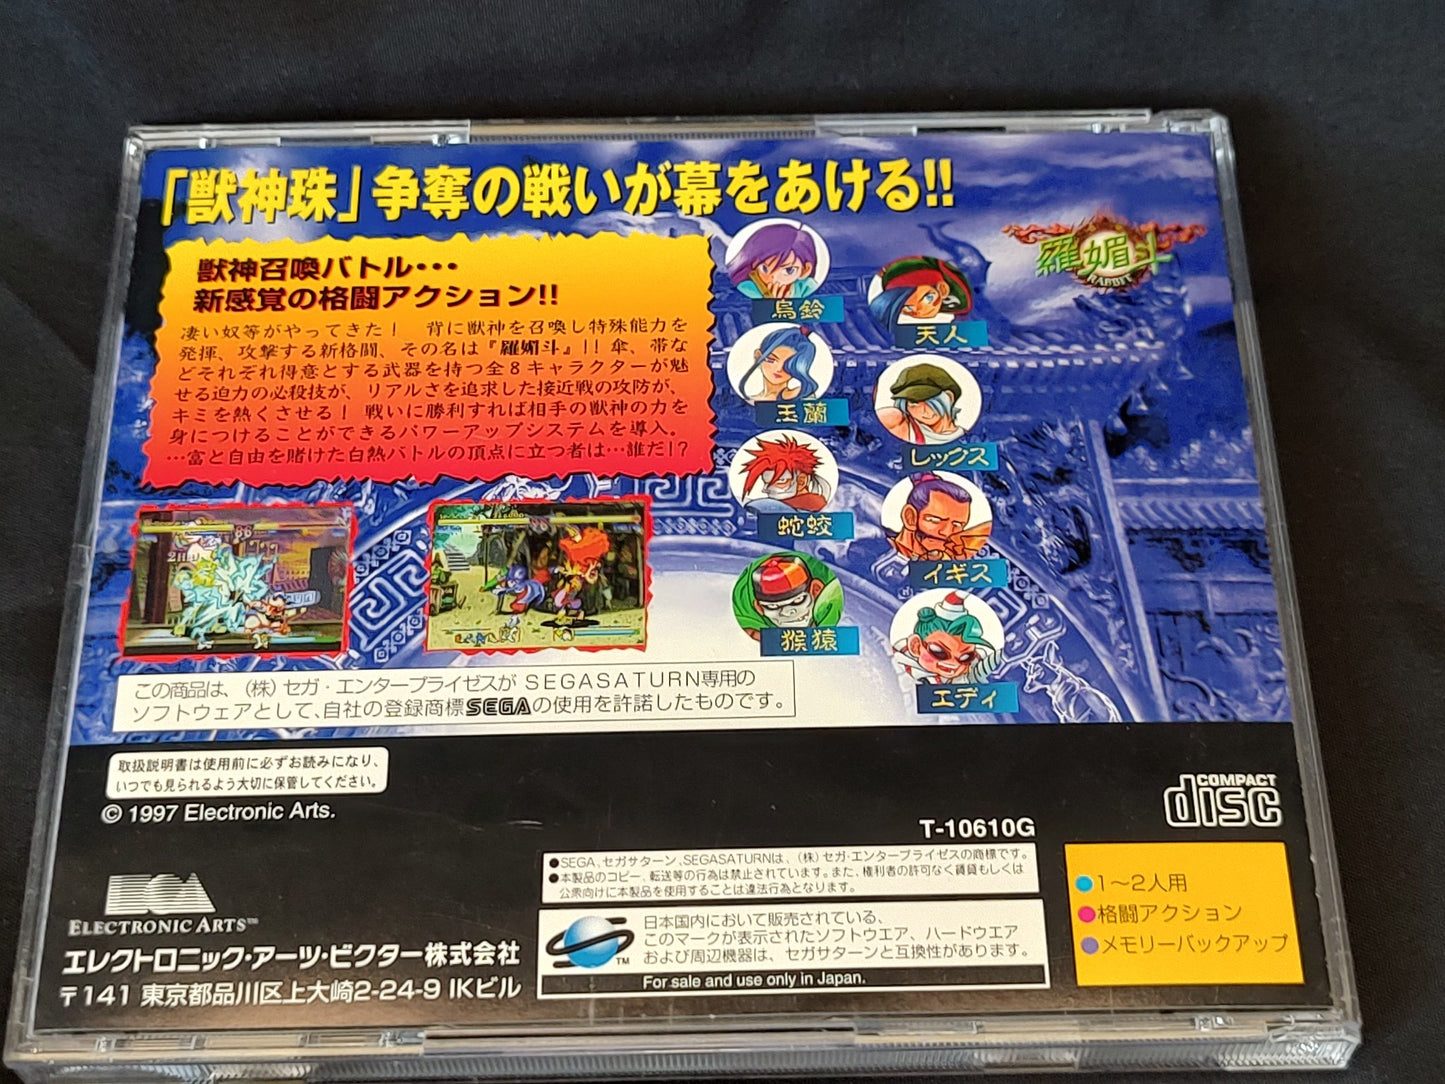 Rabbit SEGA Saturn Battle Game, Game disk, Manual, Case set/tested-g0401-